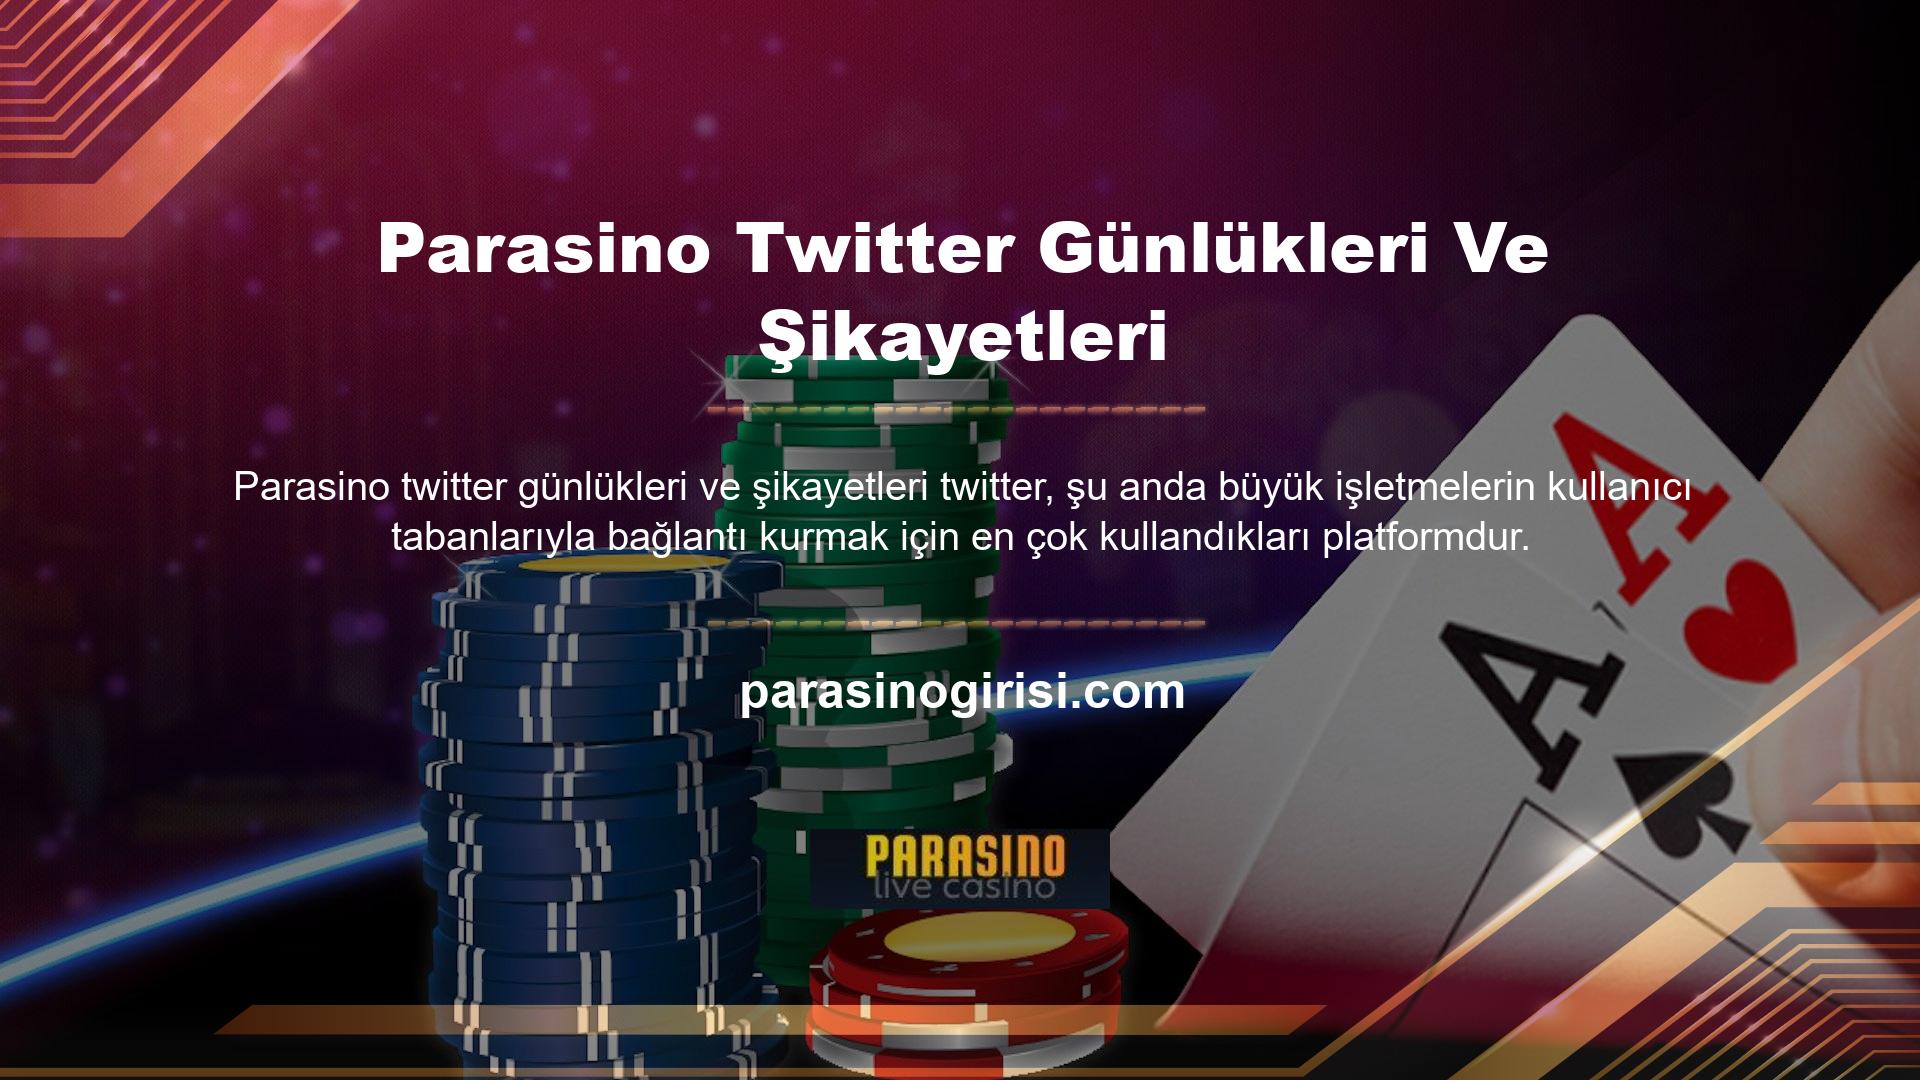 Bu nedenle Parasino Twitter hesabı, Parasino memnun olmayan kullanıcılar için Parasino ile daha iyi iletişim kurabilmeleri için oldukça önemlidir